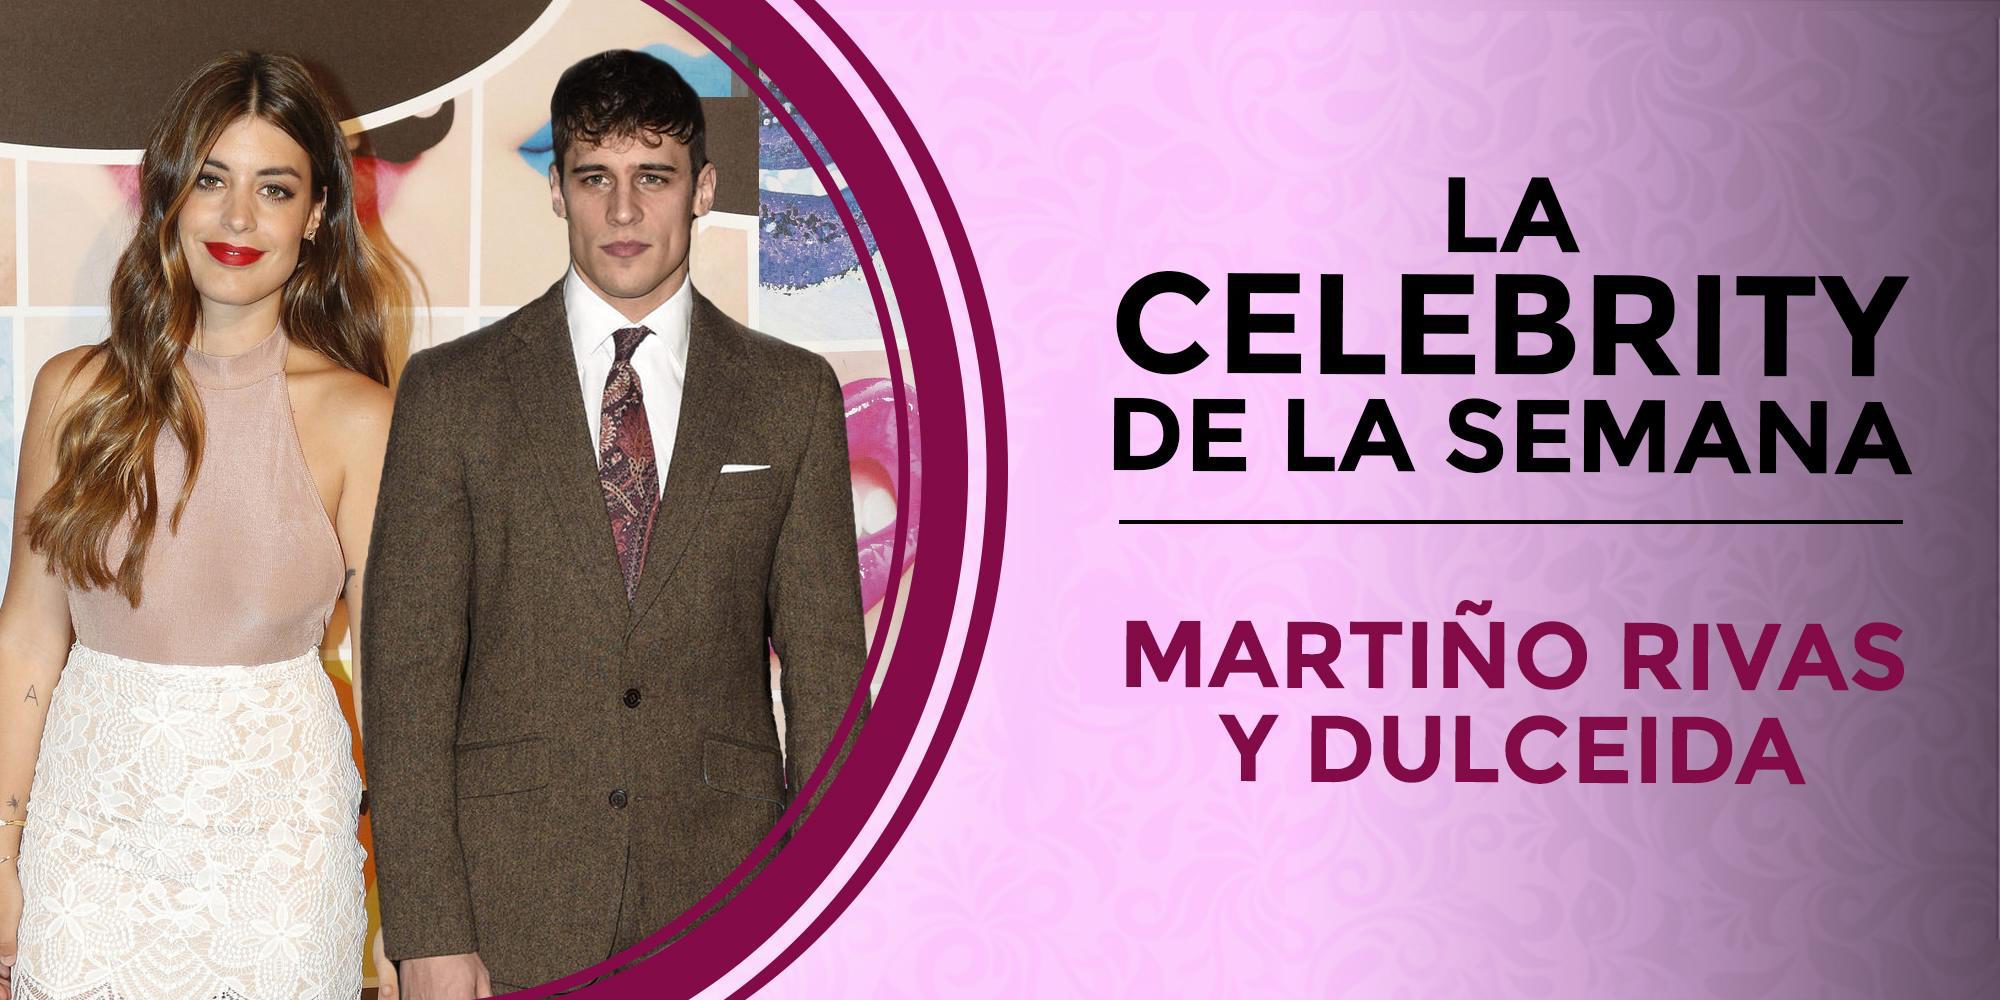 Dulceida, Martiño Rivas y los Reyes Felipe y Letizia, las celebrities de la semana por sus pillados